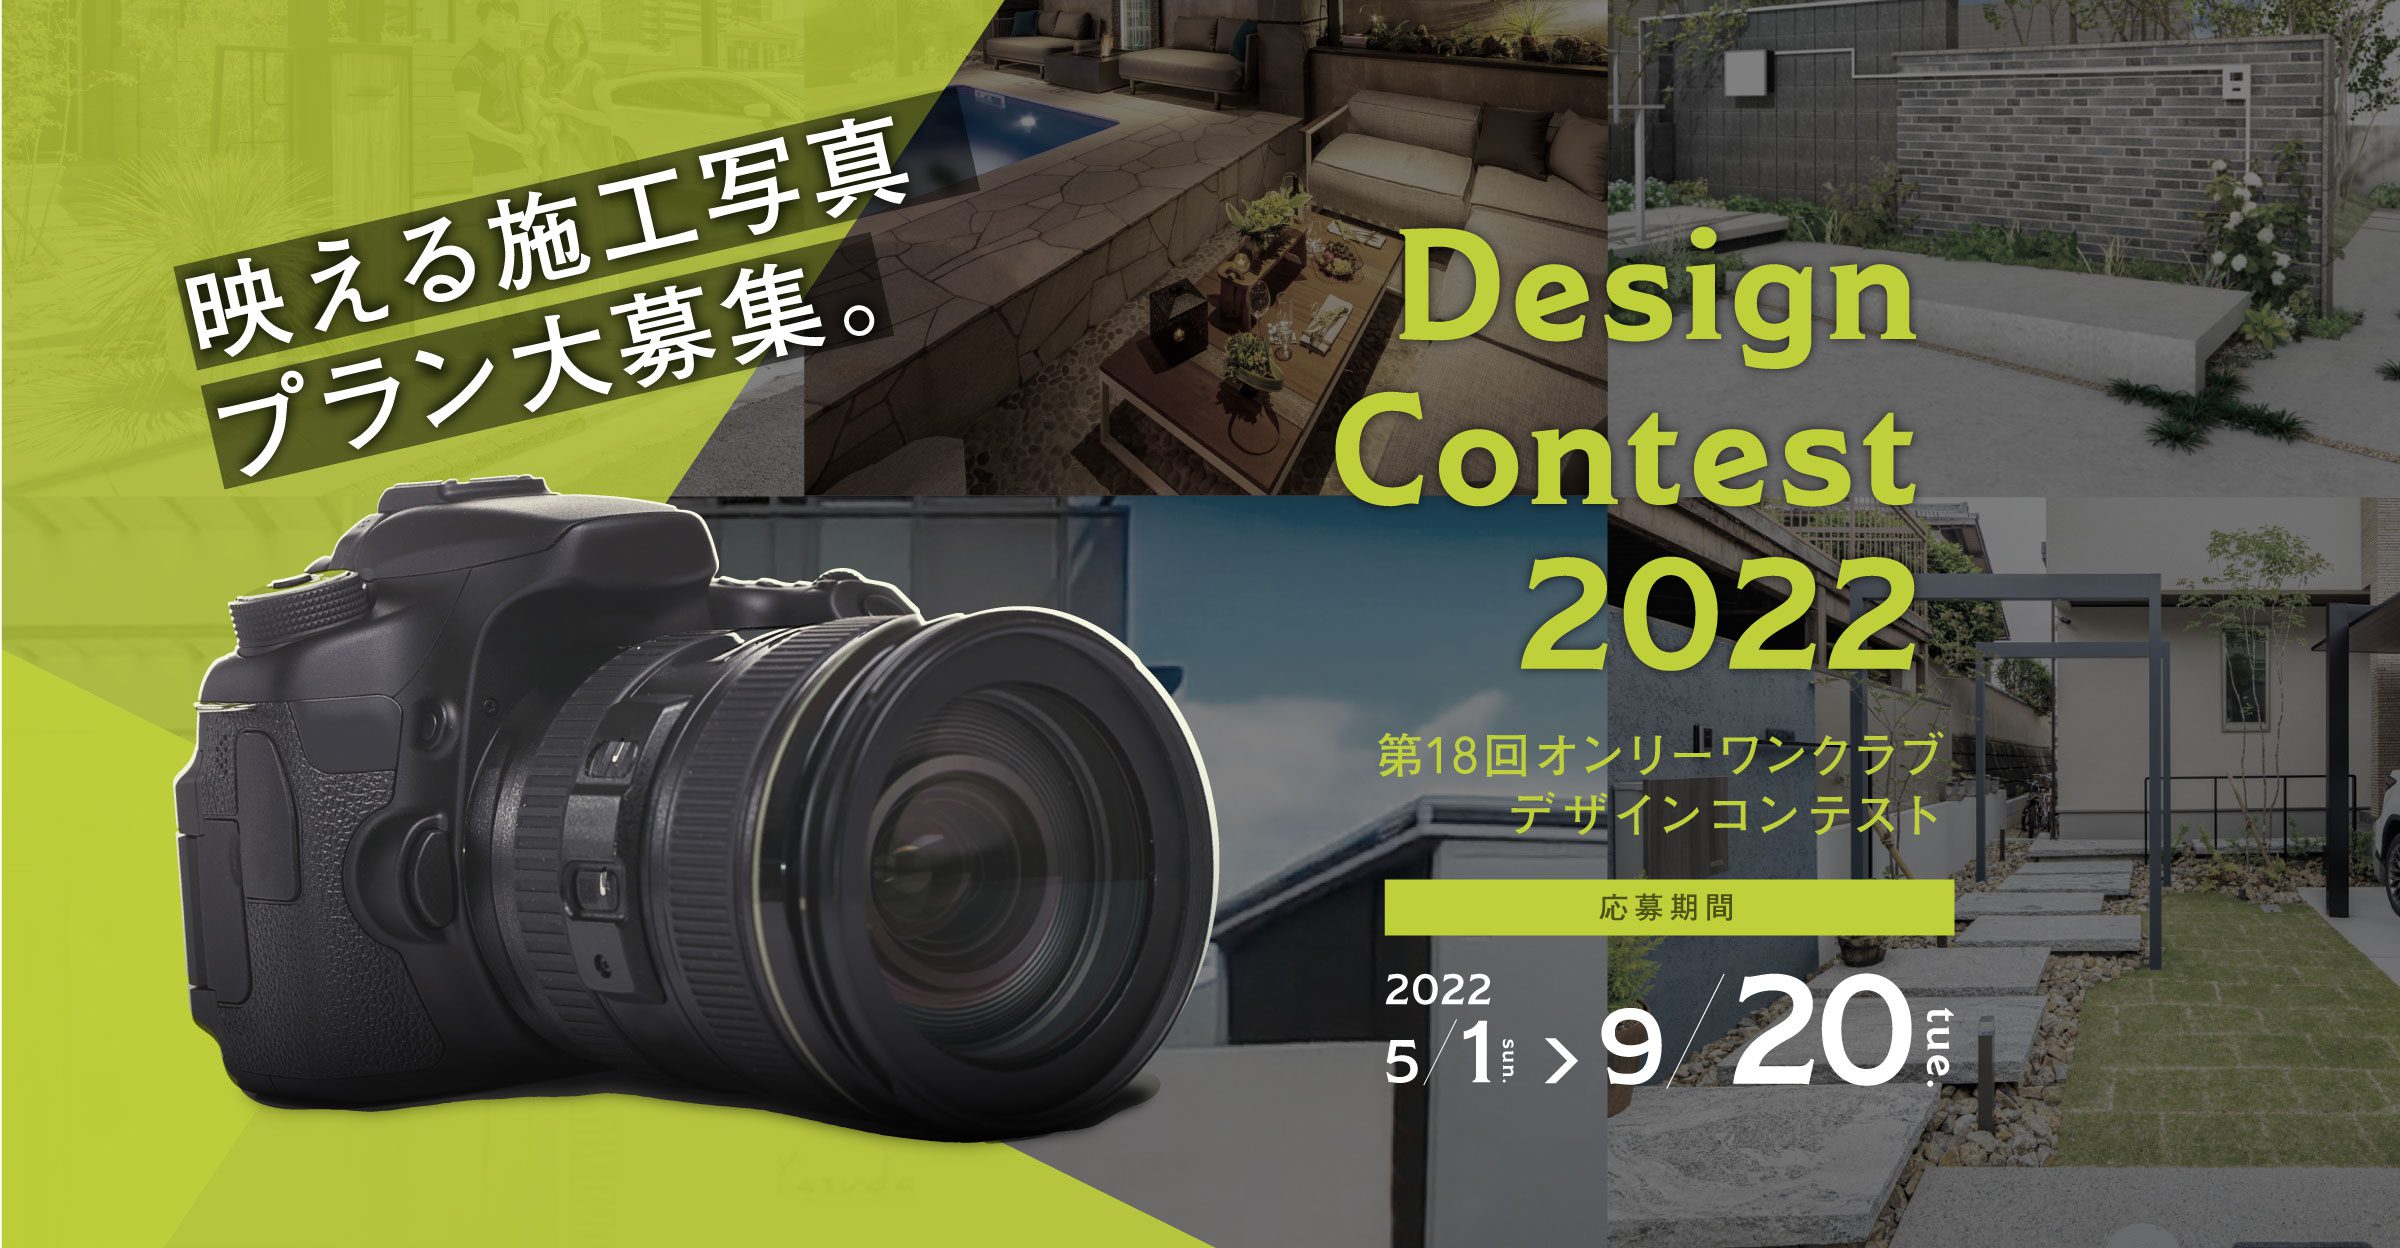 DESIGN CONTEST デザインコンテスト2022